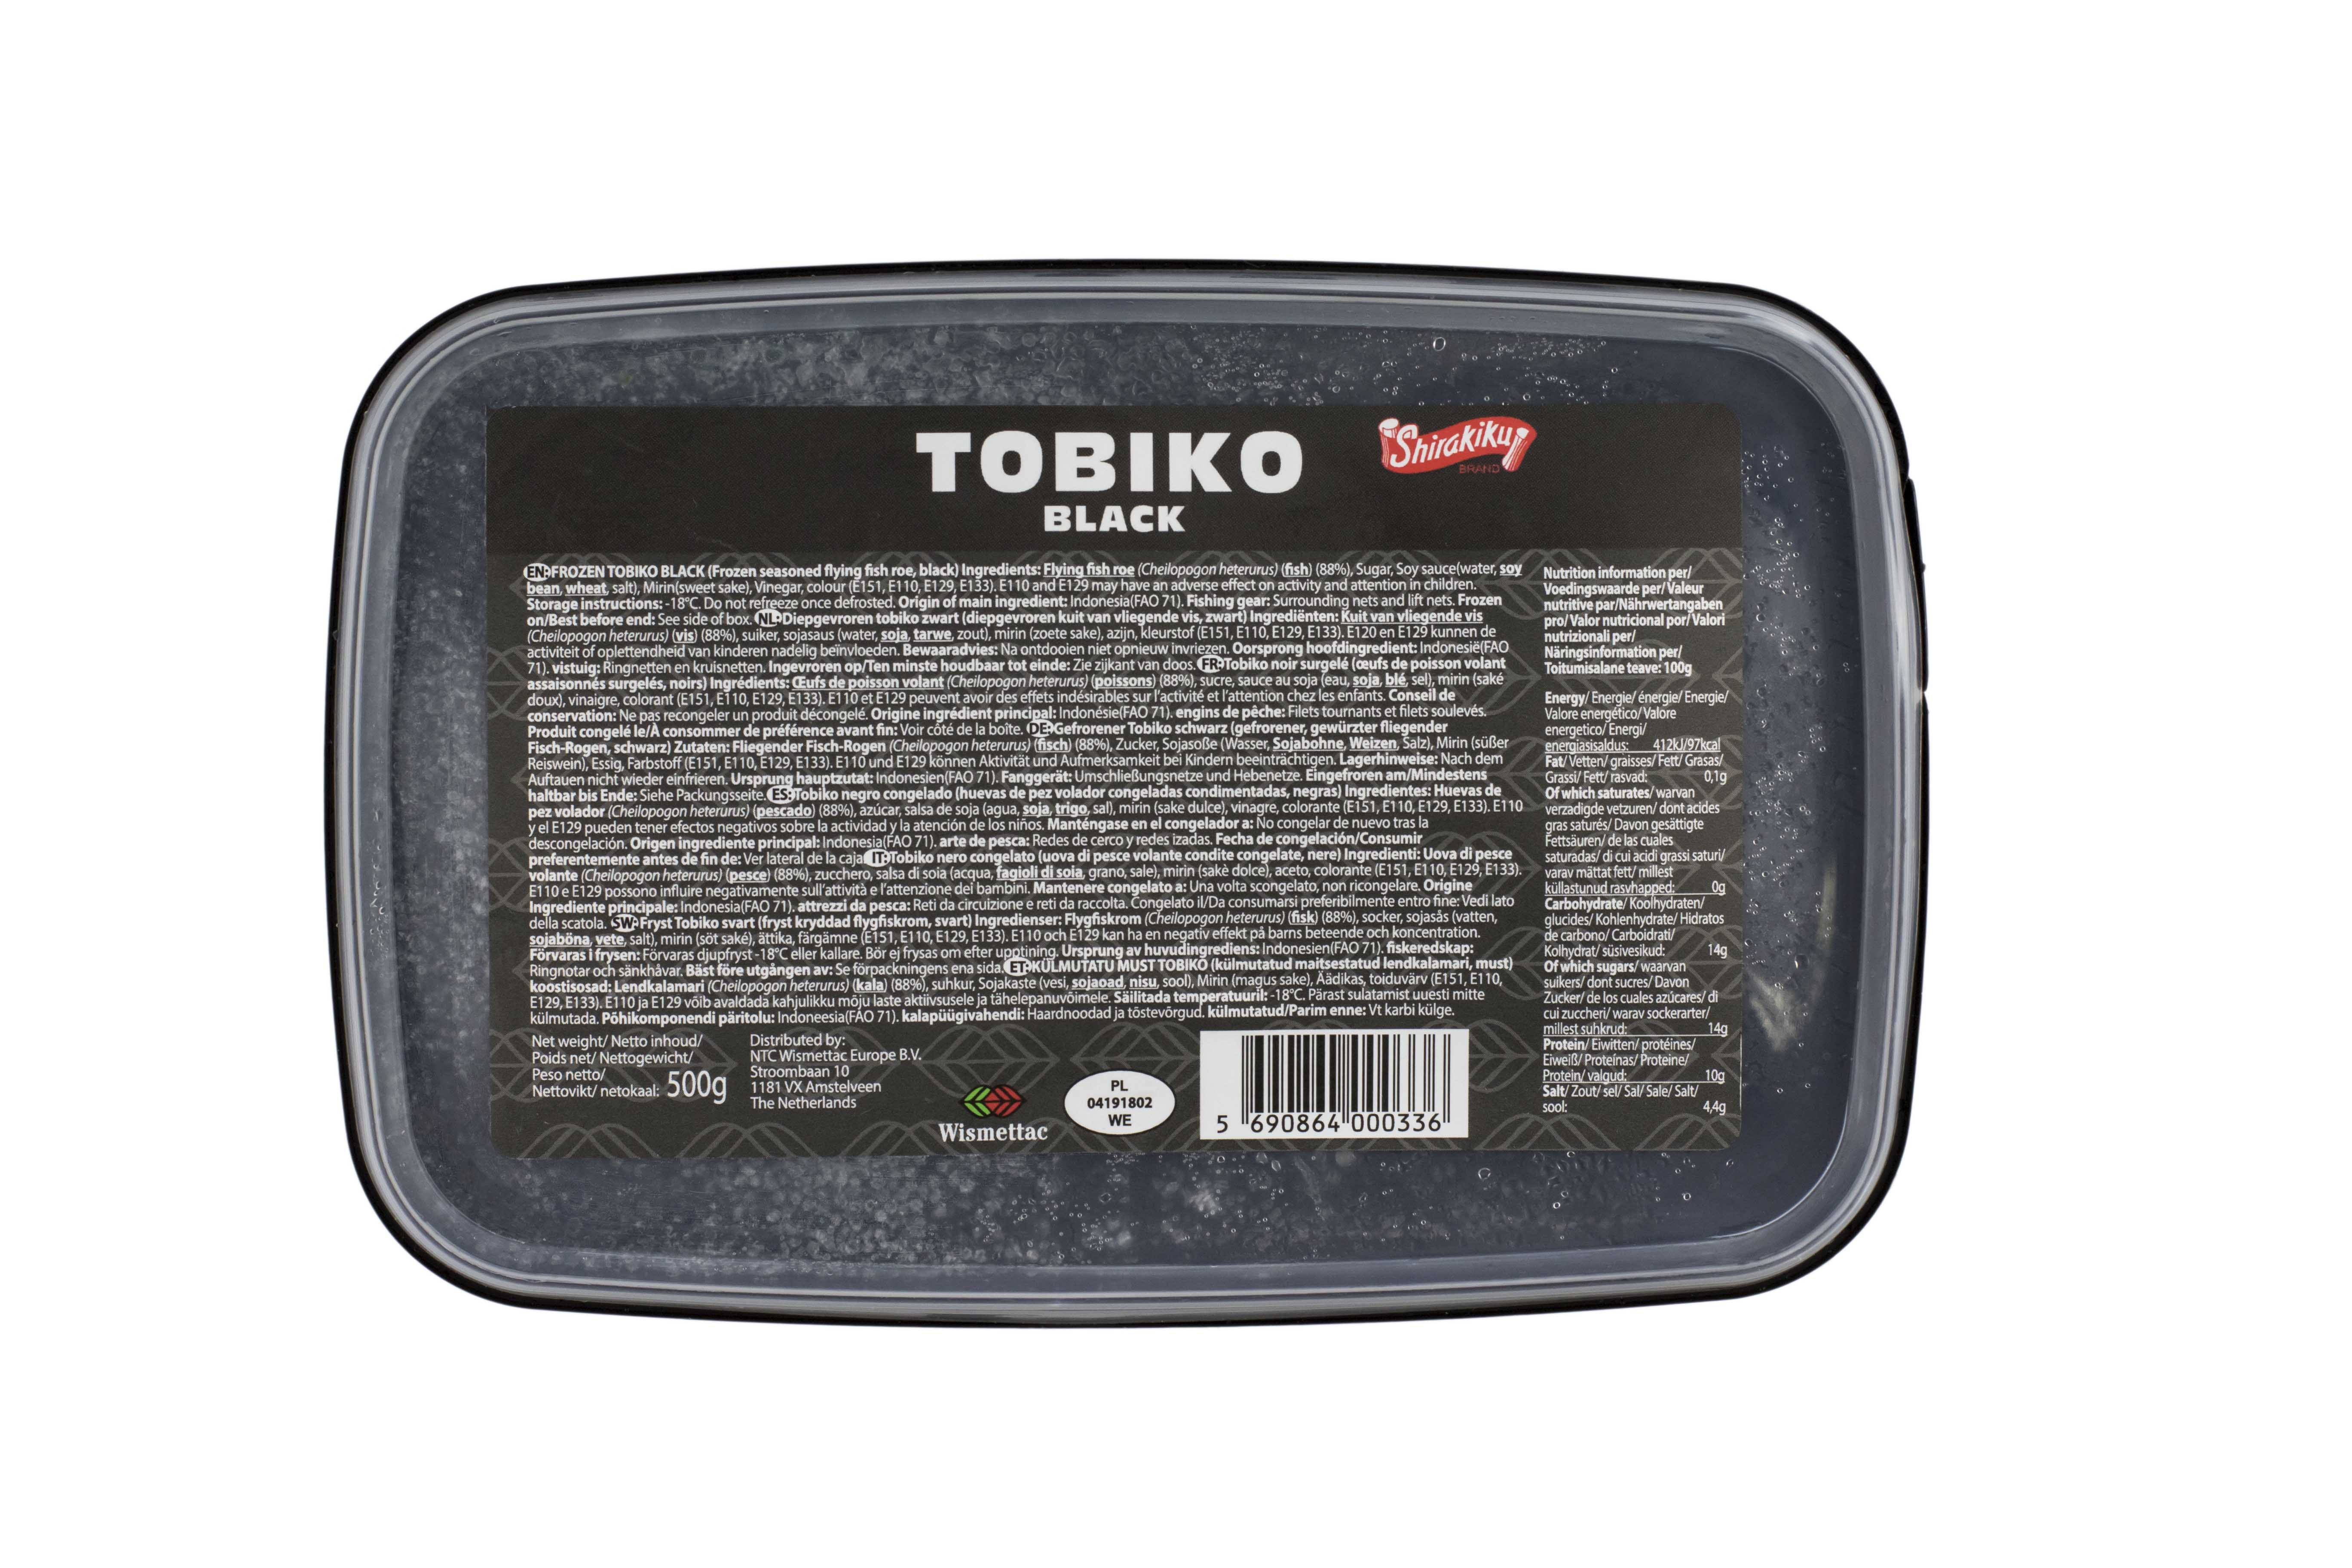 Icre Tobiko negre, caserola de 500 gr Shirakiku